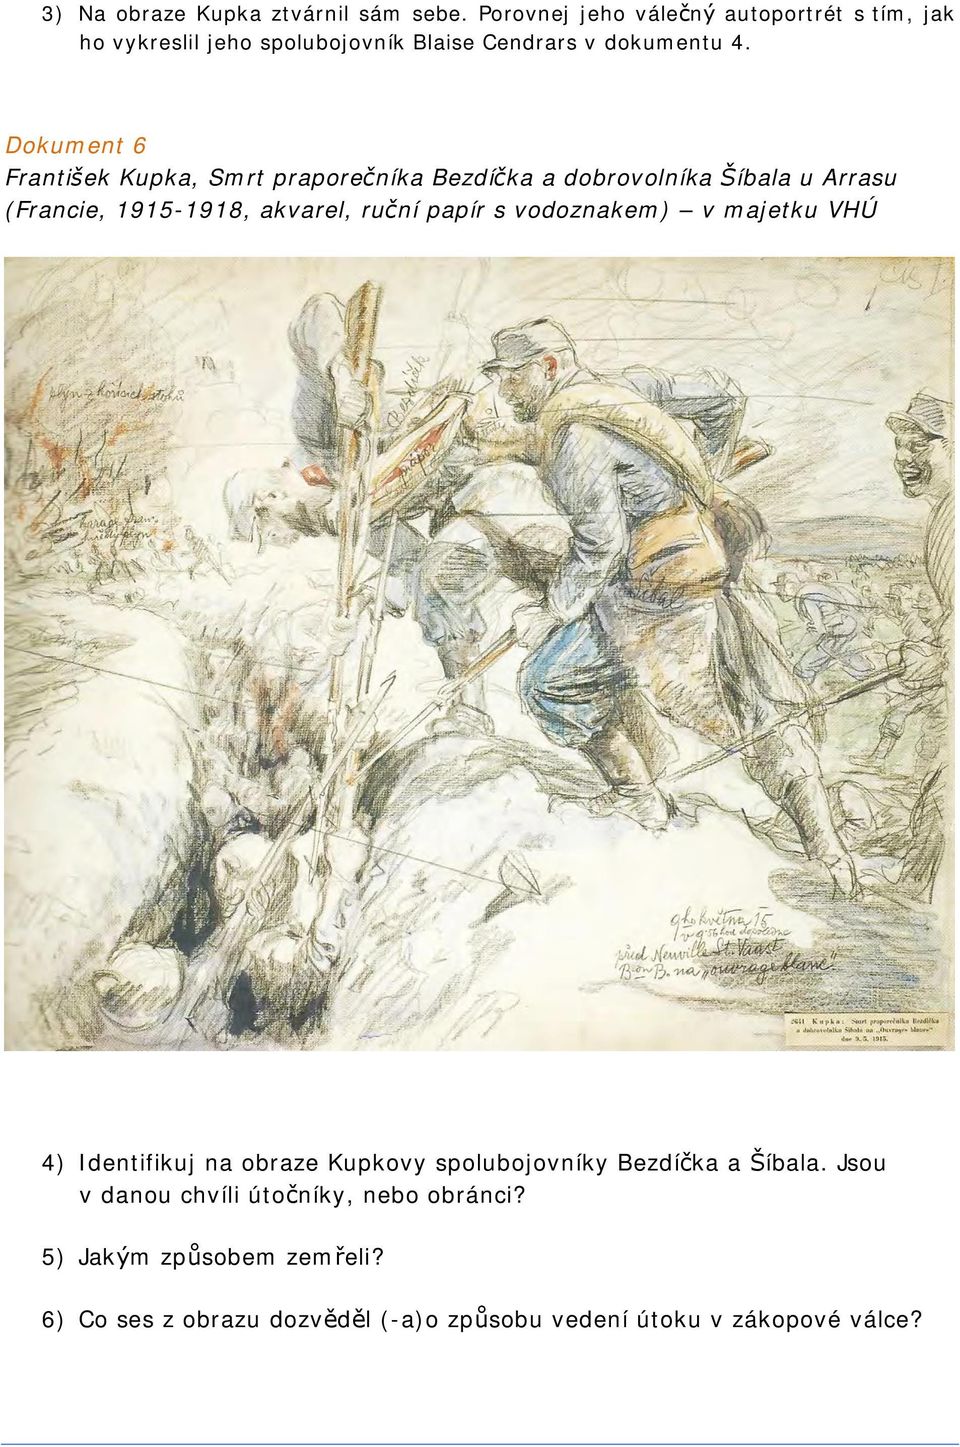 Dokument 6 František Kupka, Smrt praporečníka Bezdíčka a dobrovolníka Šíbala u Arrasu (Francie, 1915-1918, akvarel, ruční papír